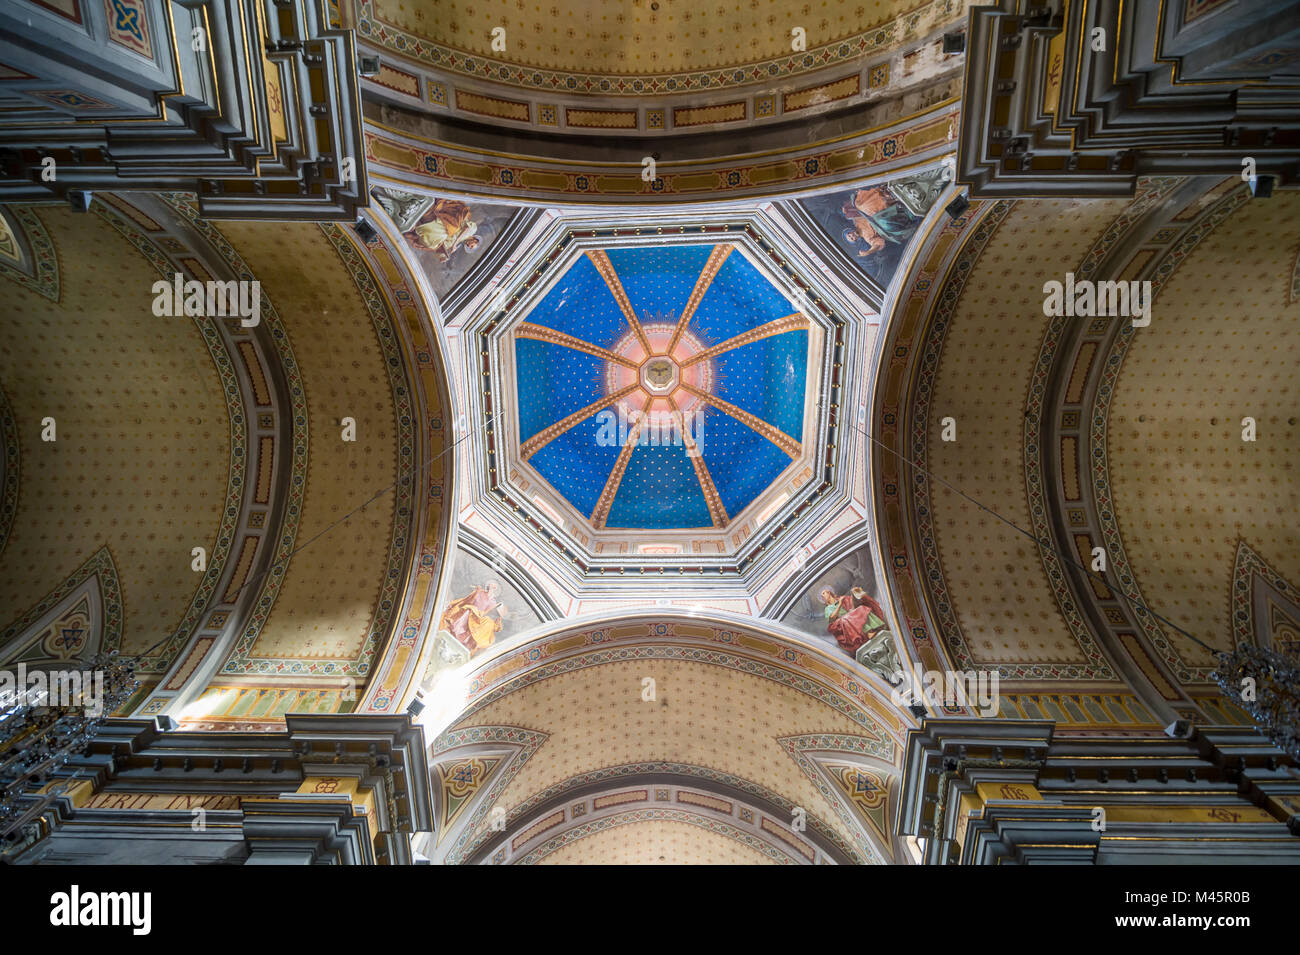 Intérieur de la cathédrale d'Oristano, Oristano, Sardaigne, Italie Banque D'Images